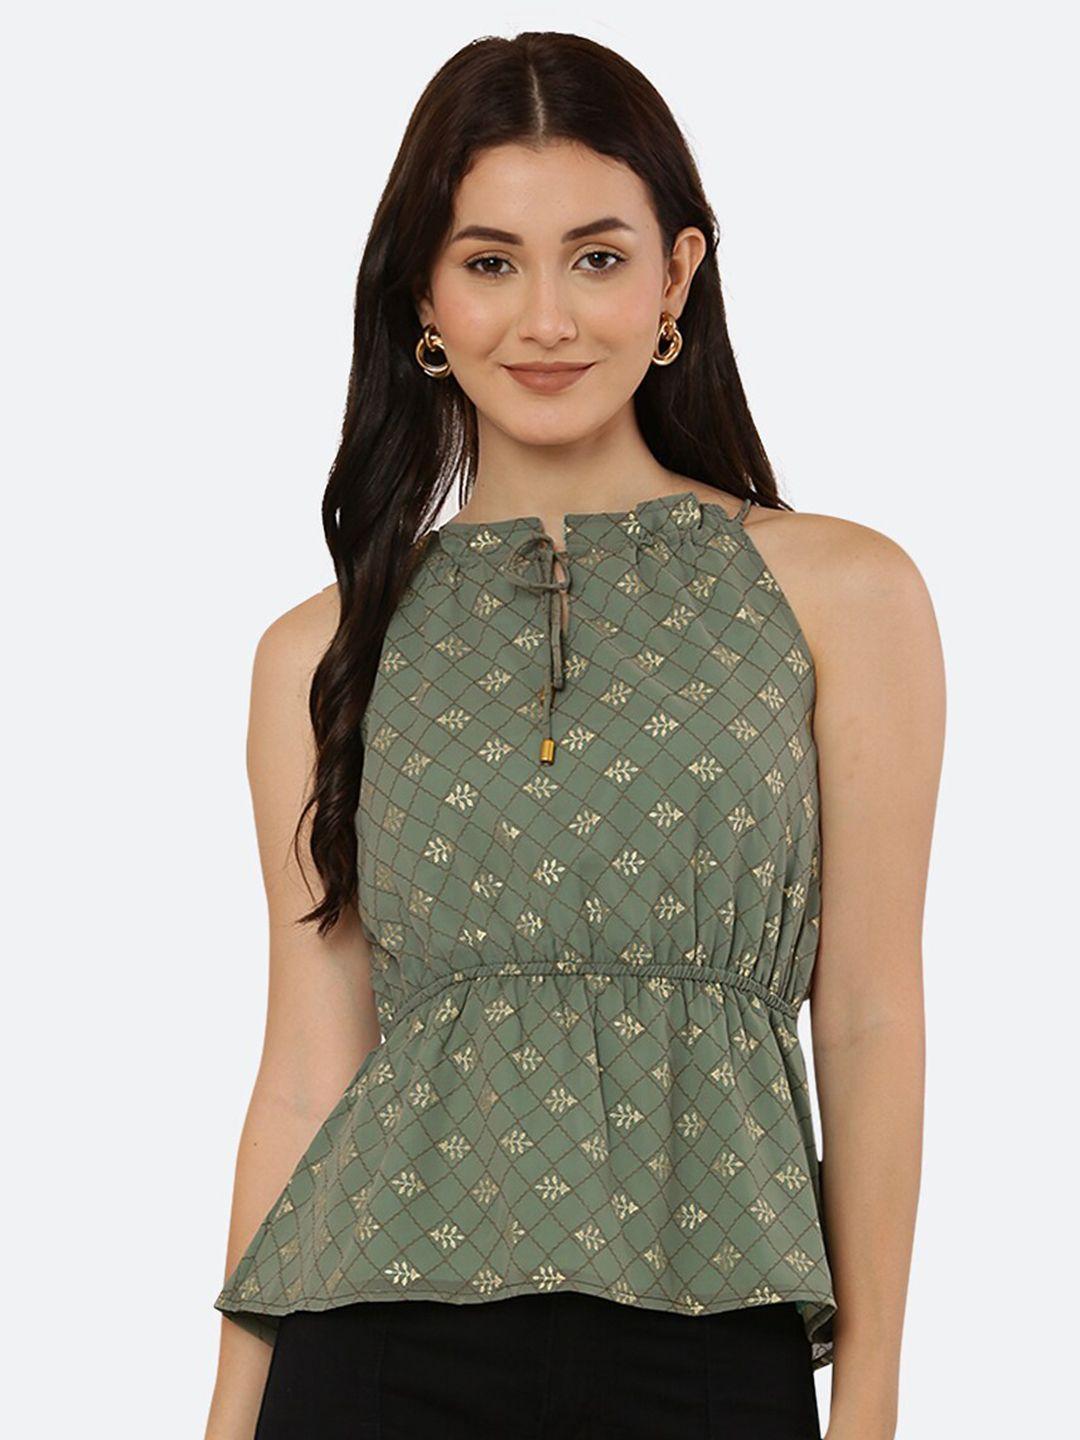 raassio-women-green-print-styled-back-top